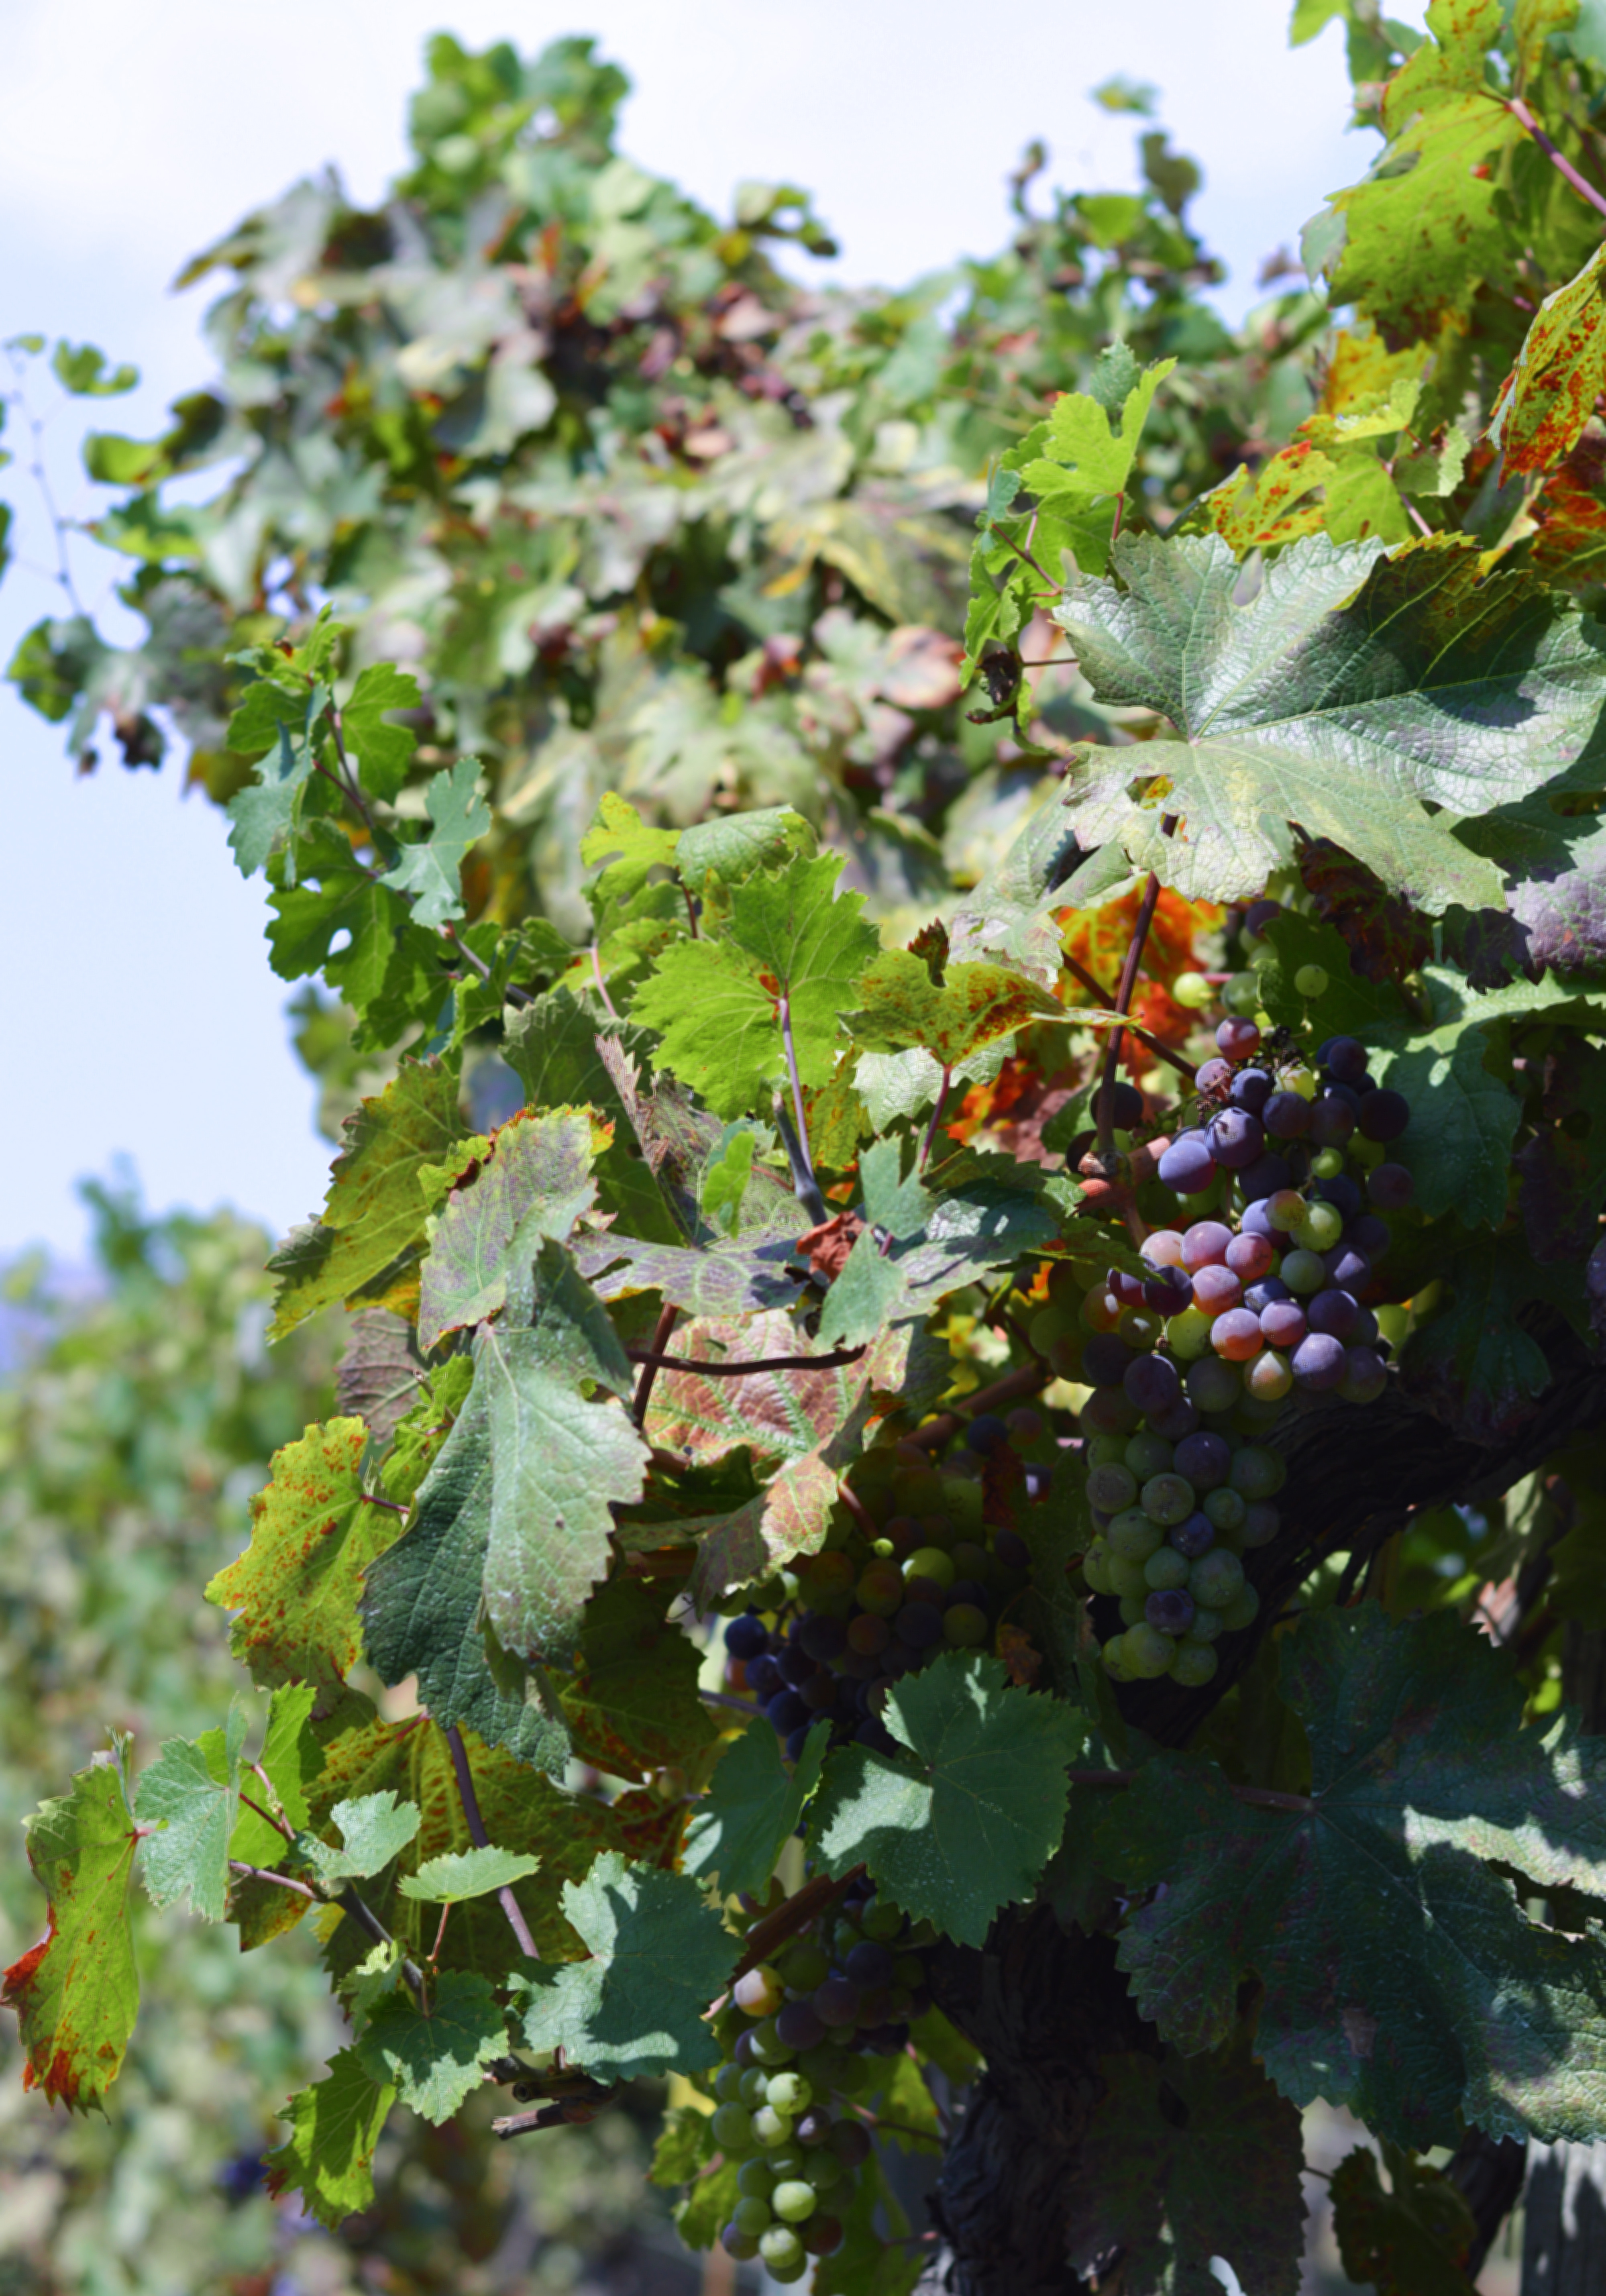 Grapes on the vine at Cantina del Vesuvio vineyard in Italy